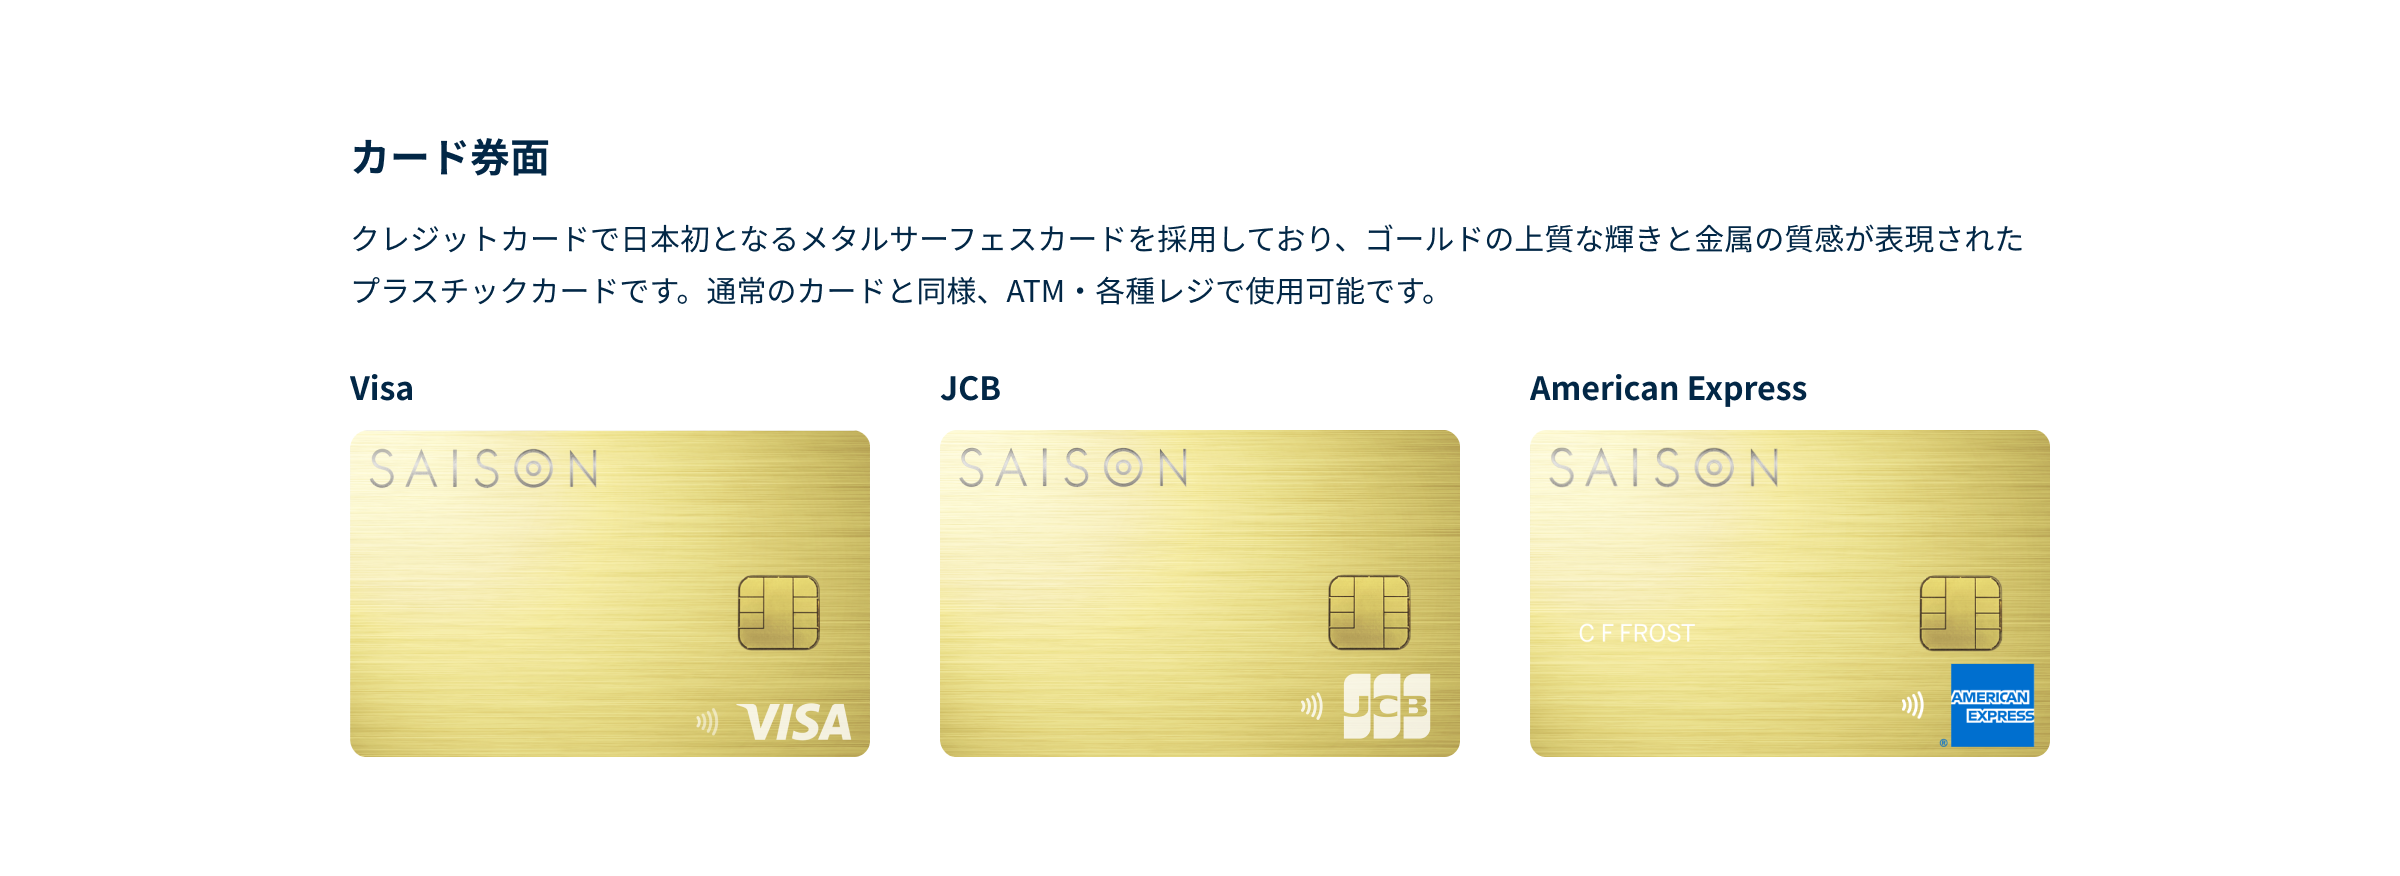 クレジットカードで日本初となるメタルサーフェスカードを採用しており、ゴールドの上質な輝きと金属の質感が表現されたプラスチックカードです。通常のカードと同様、ATM・各種レジで使用可能です。VISA、JCB、American Express券面それぞれに右下にロゴが表示されています。